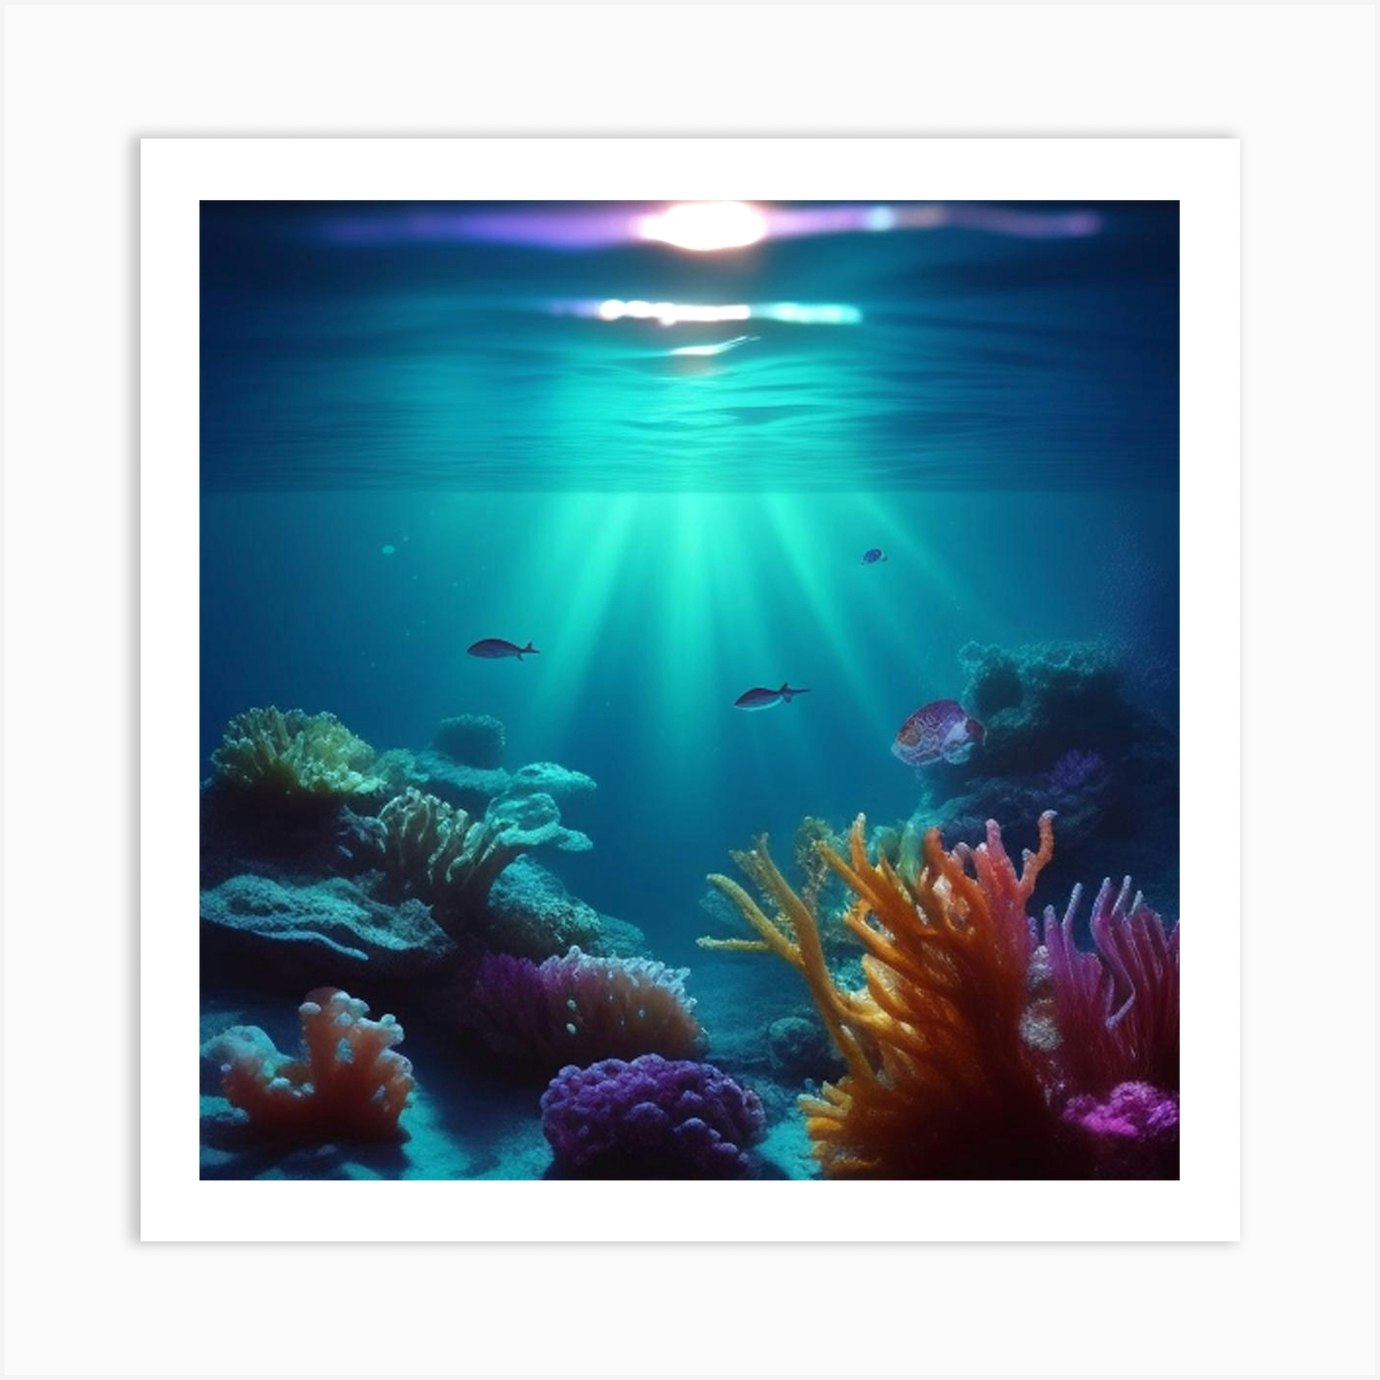 Underwater Coral Reef 1 Art Print by MdsArts - Fy